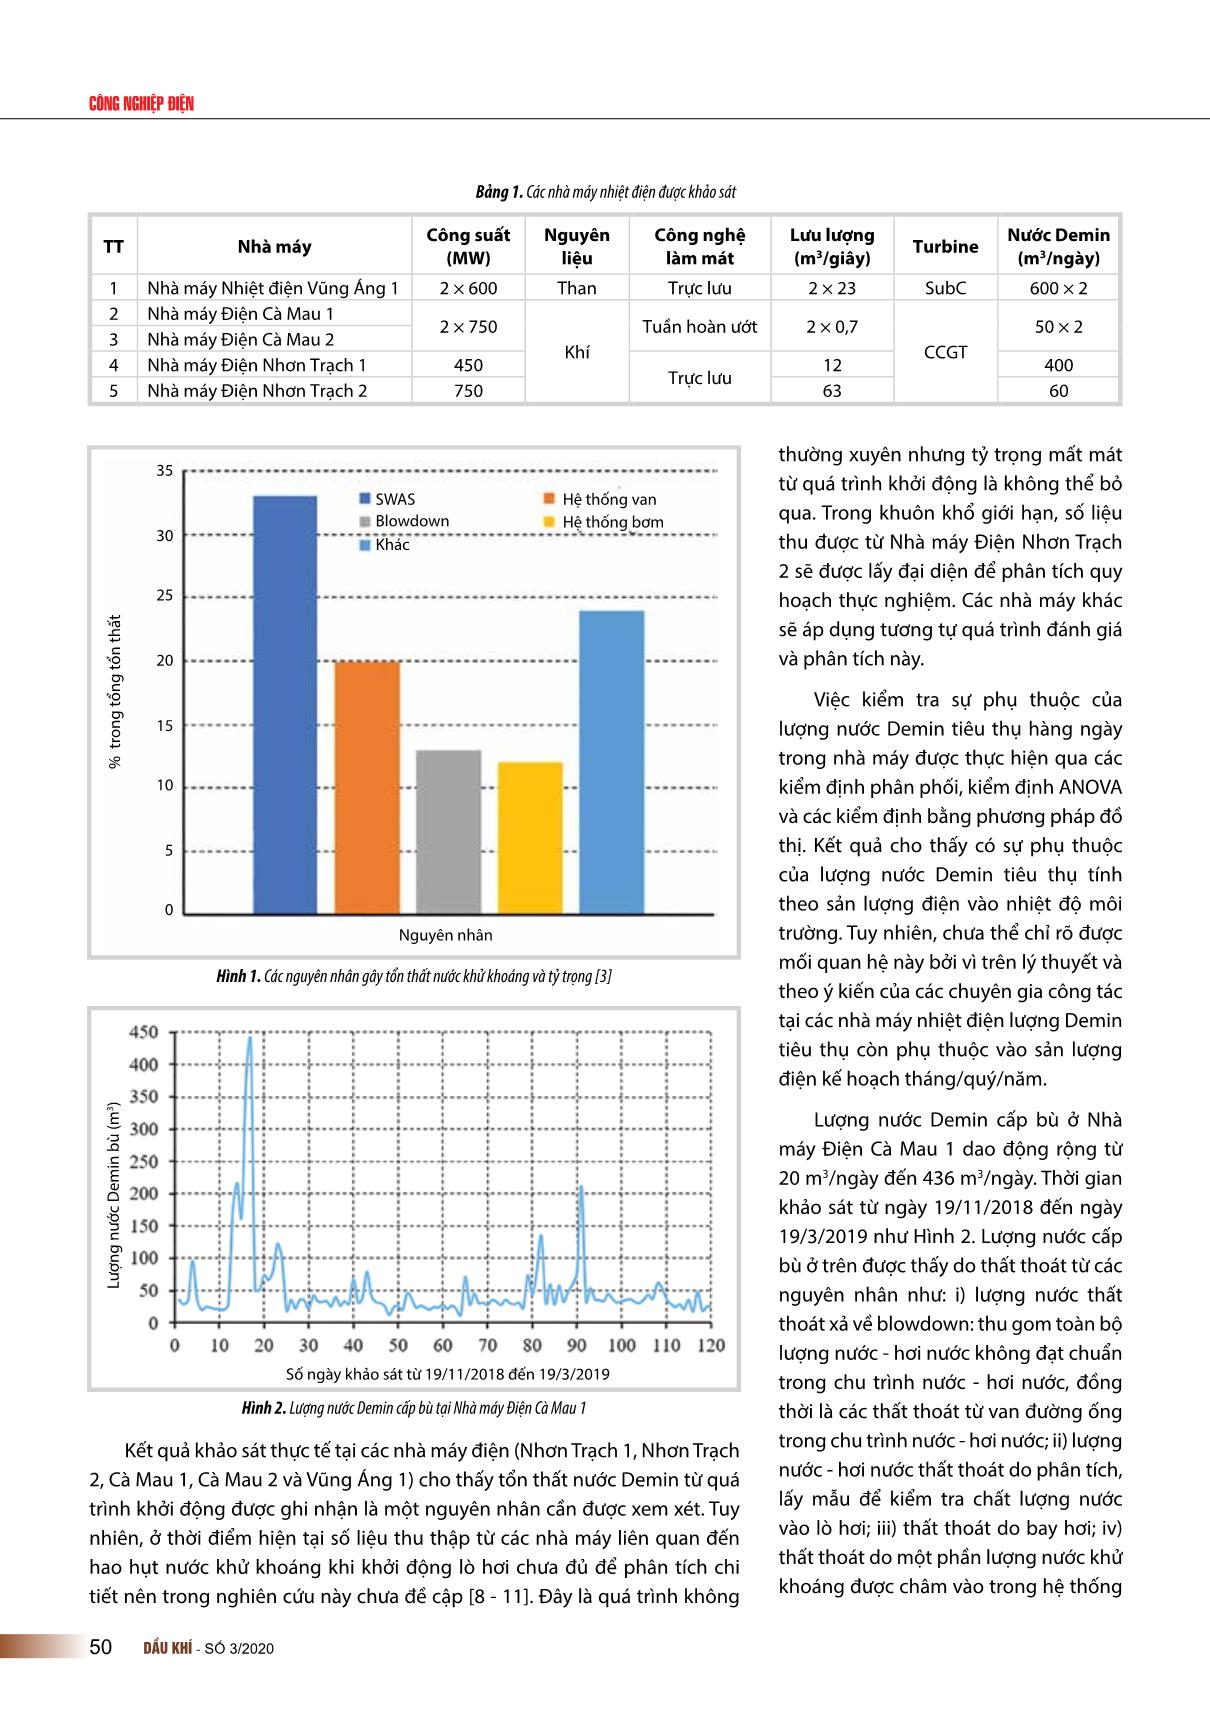 Nghiên cứu, đánh giá việc sử dụng nước khử khoáng tại các nhà máy nhiệt điện trang 3